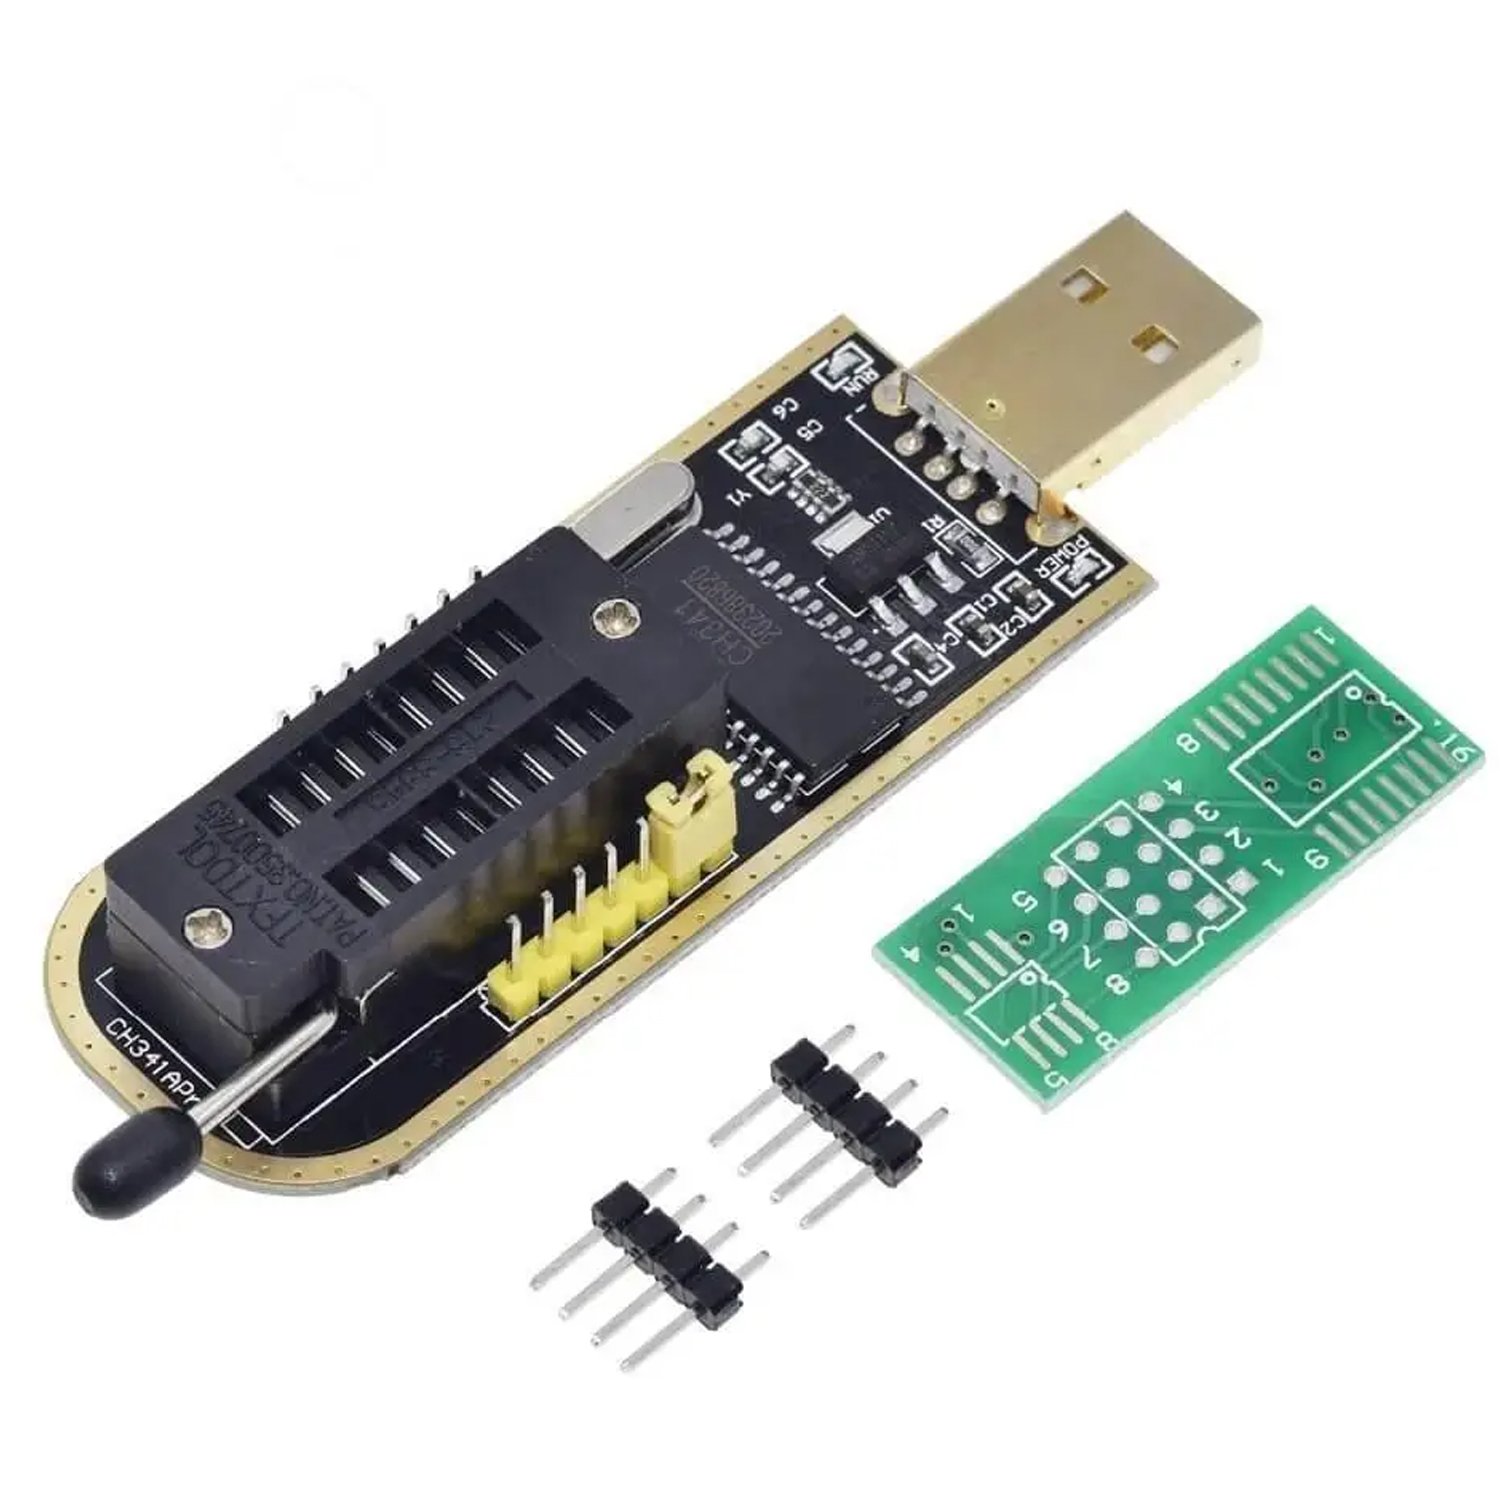 USB программатор CH341B для EEPROM и FLASH микросхем 24, 25 серий, фото